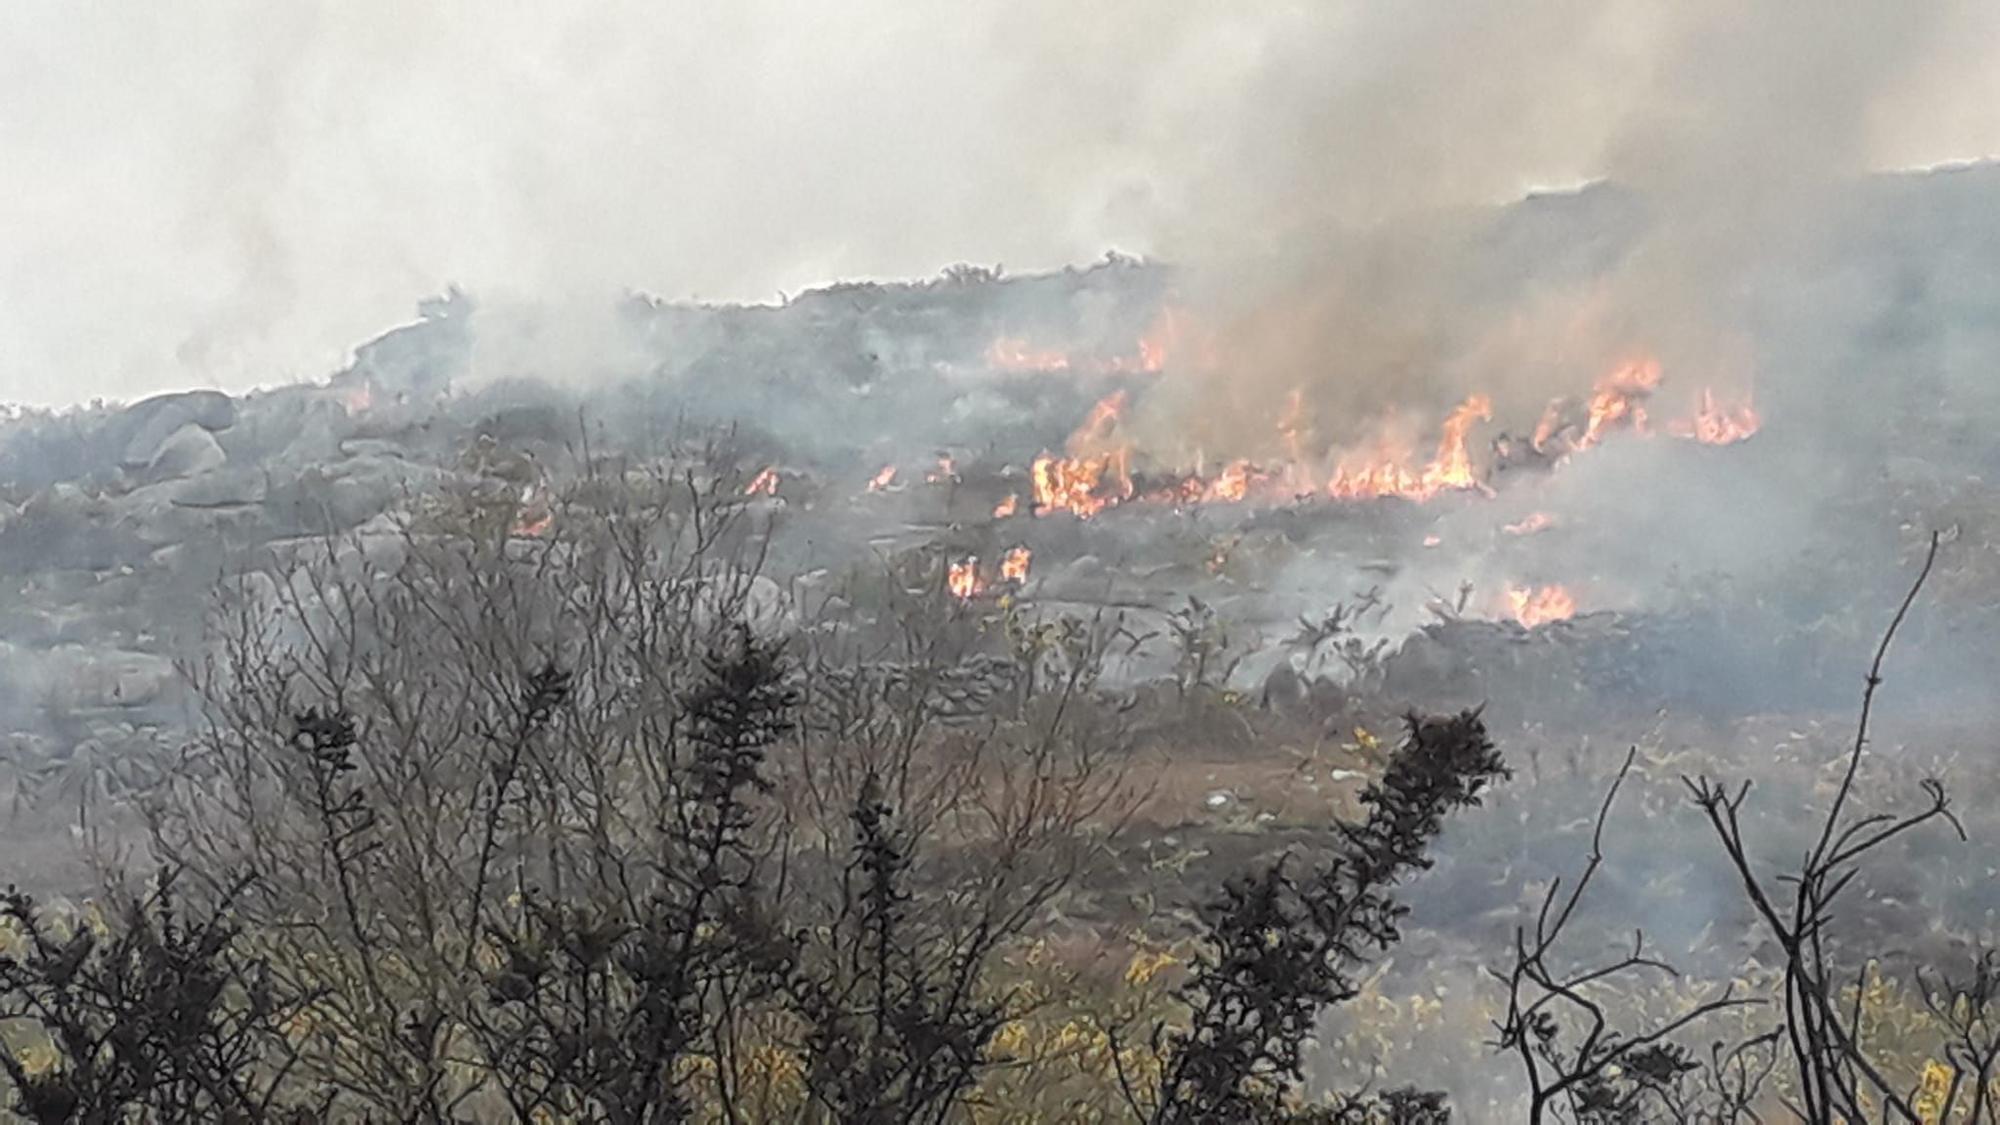 El fuego quemó 20 hectáreas de monte